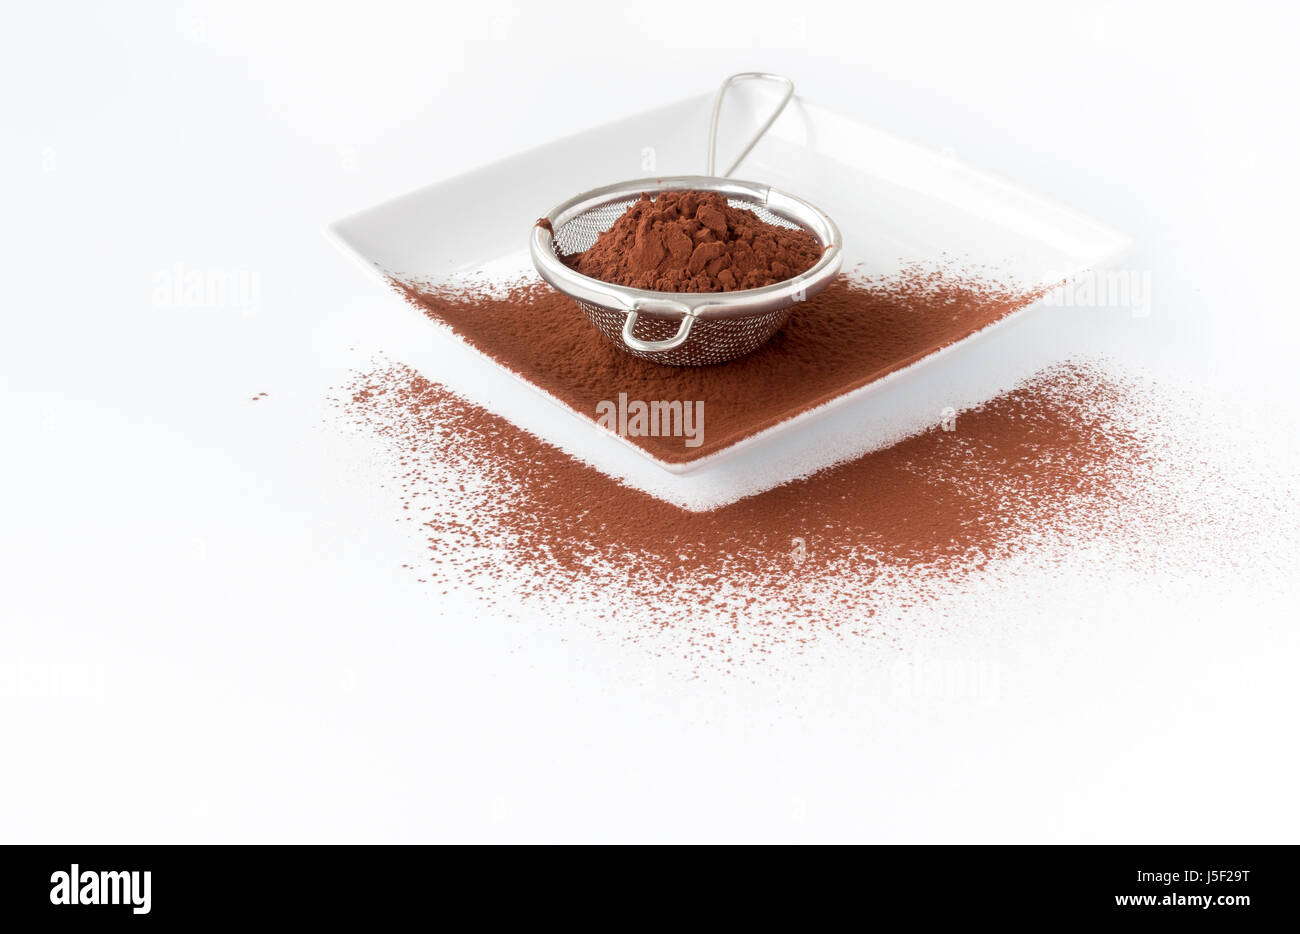 Nahaufnahme von einem Metallsieb mit Kakaopulver auf einem weißen Quadrat Porzellanteller gefüllt. Weißen Hintergrund mit Textfreiraum, flachen Schärfentiefe und sel Stockfoto